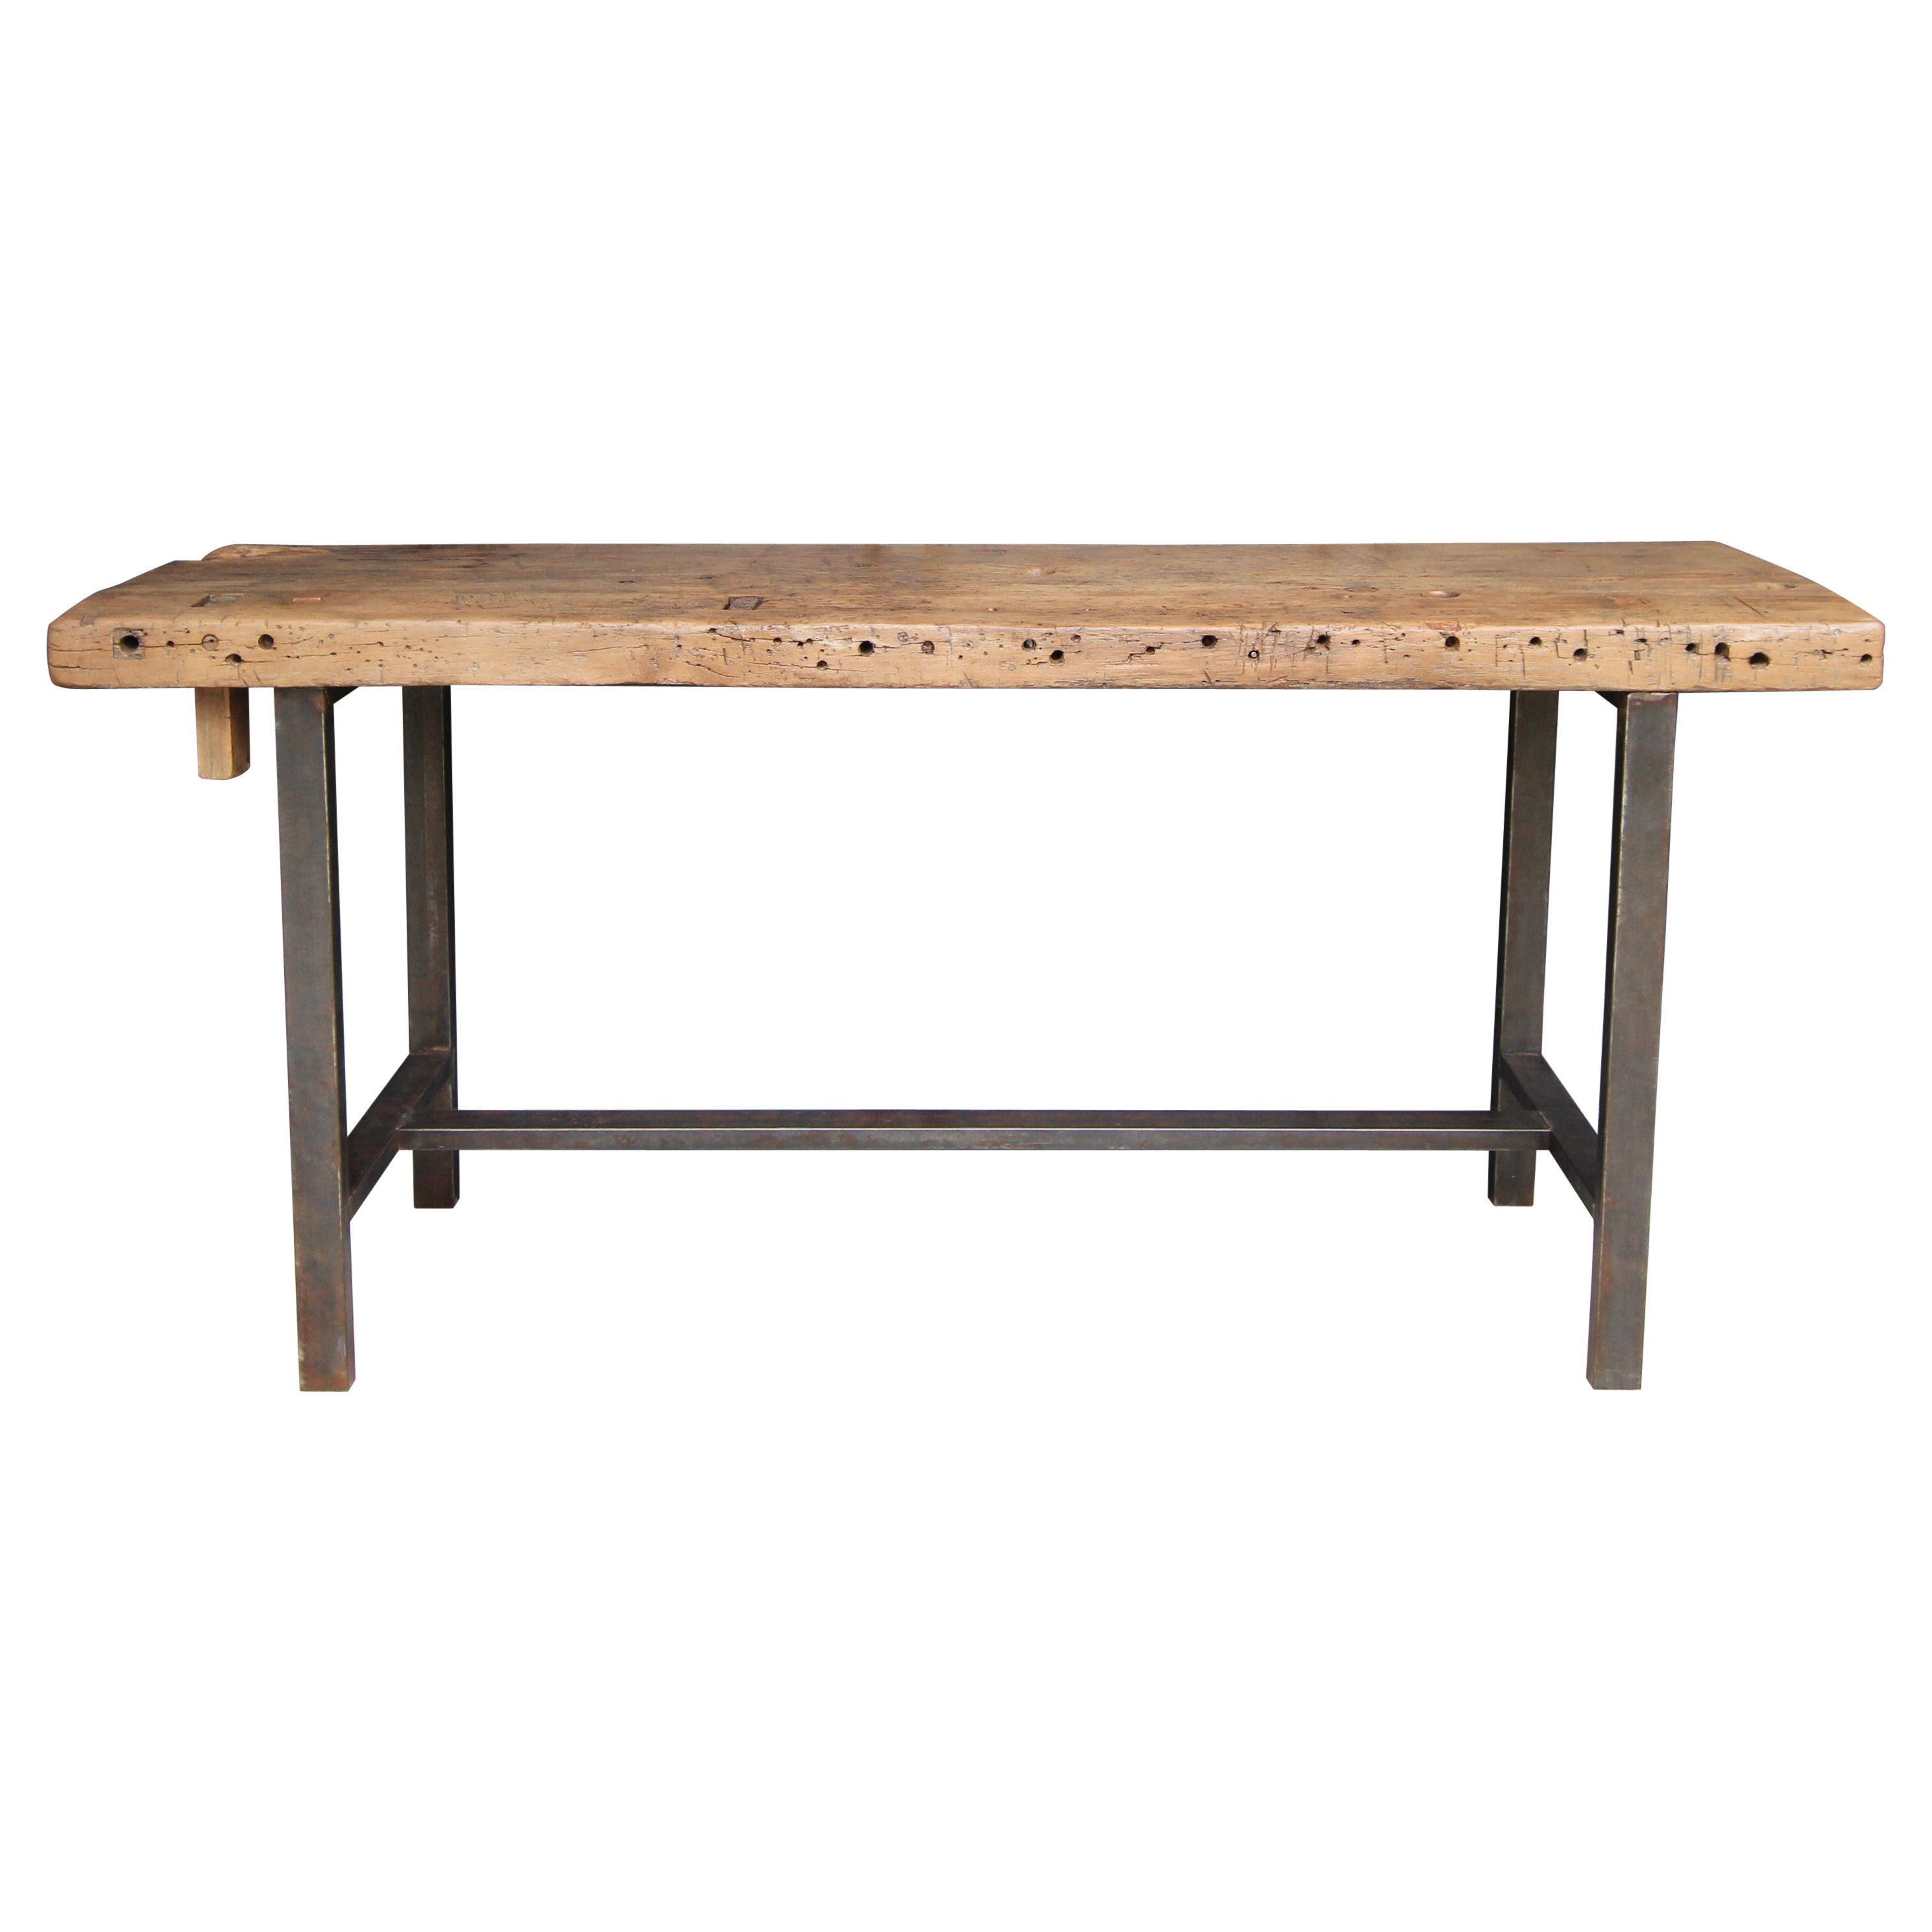 Table de travail ou console industrielle en métal et bois